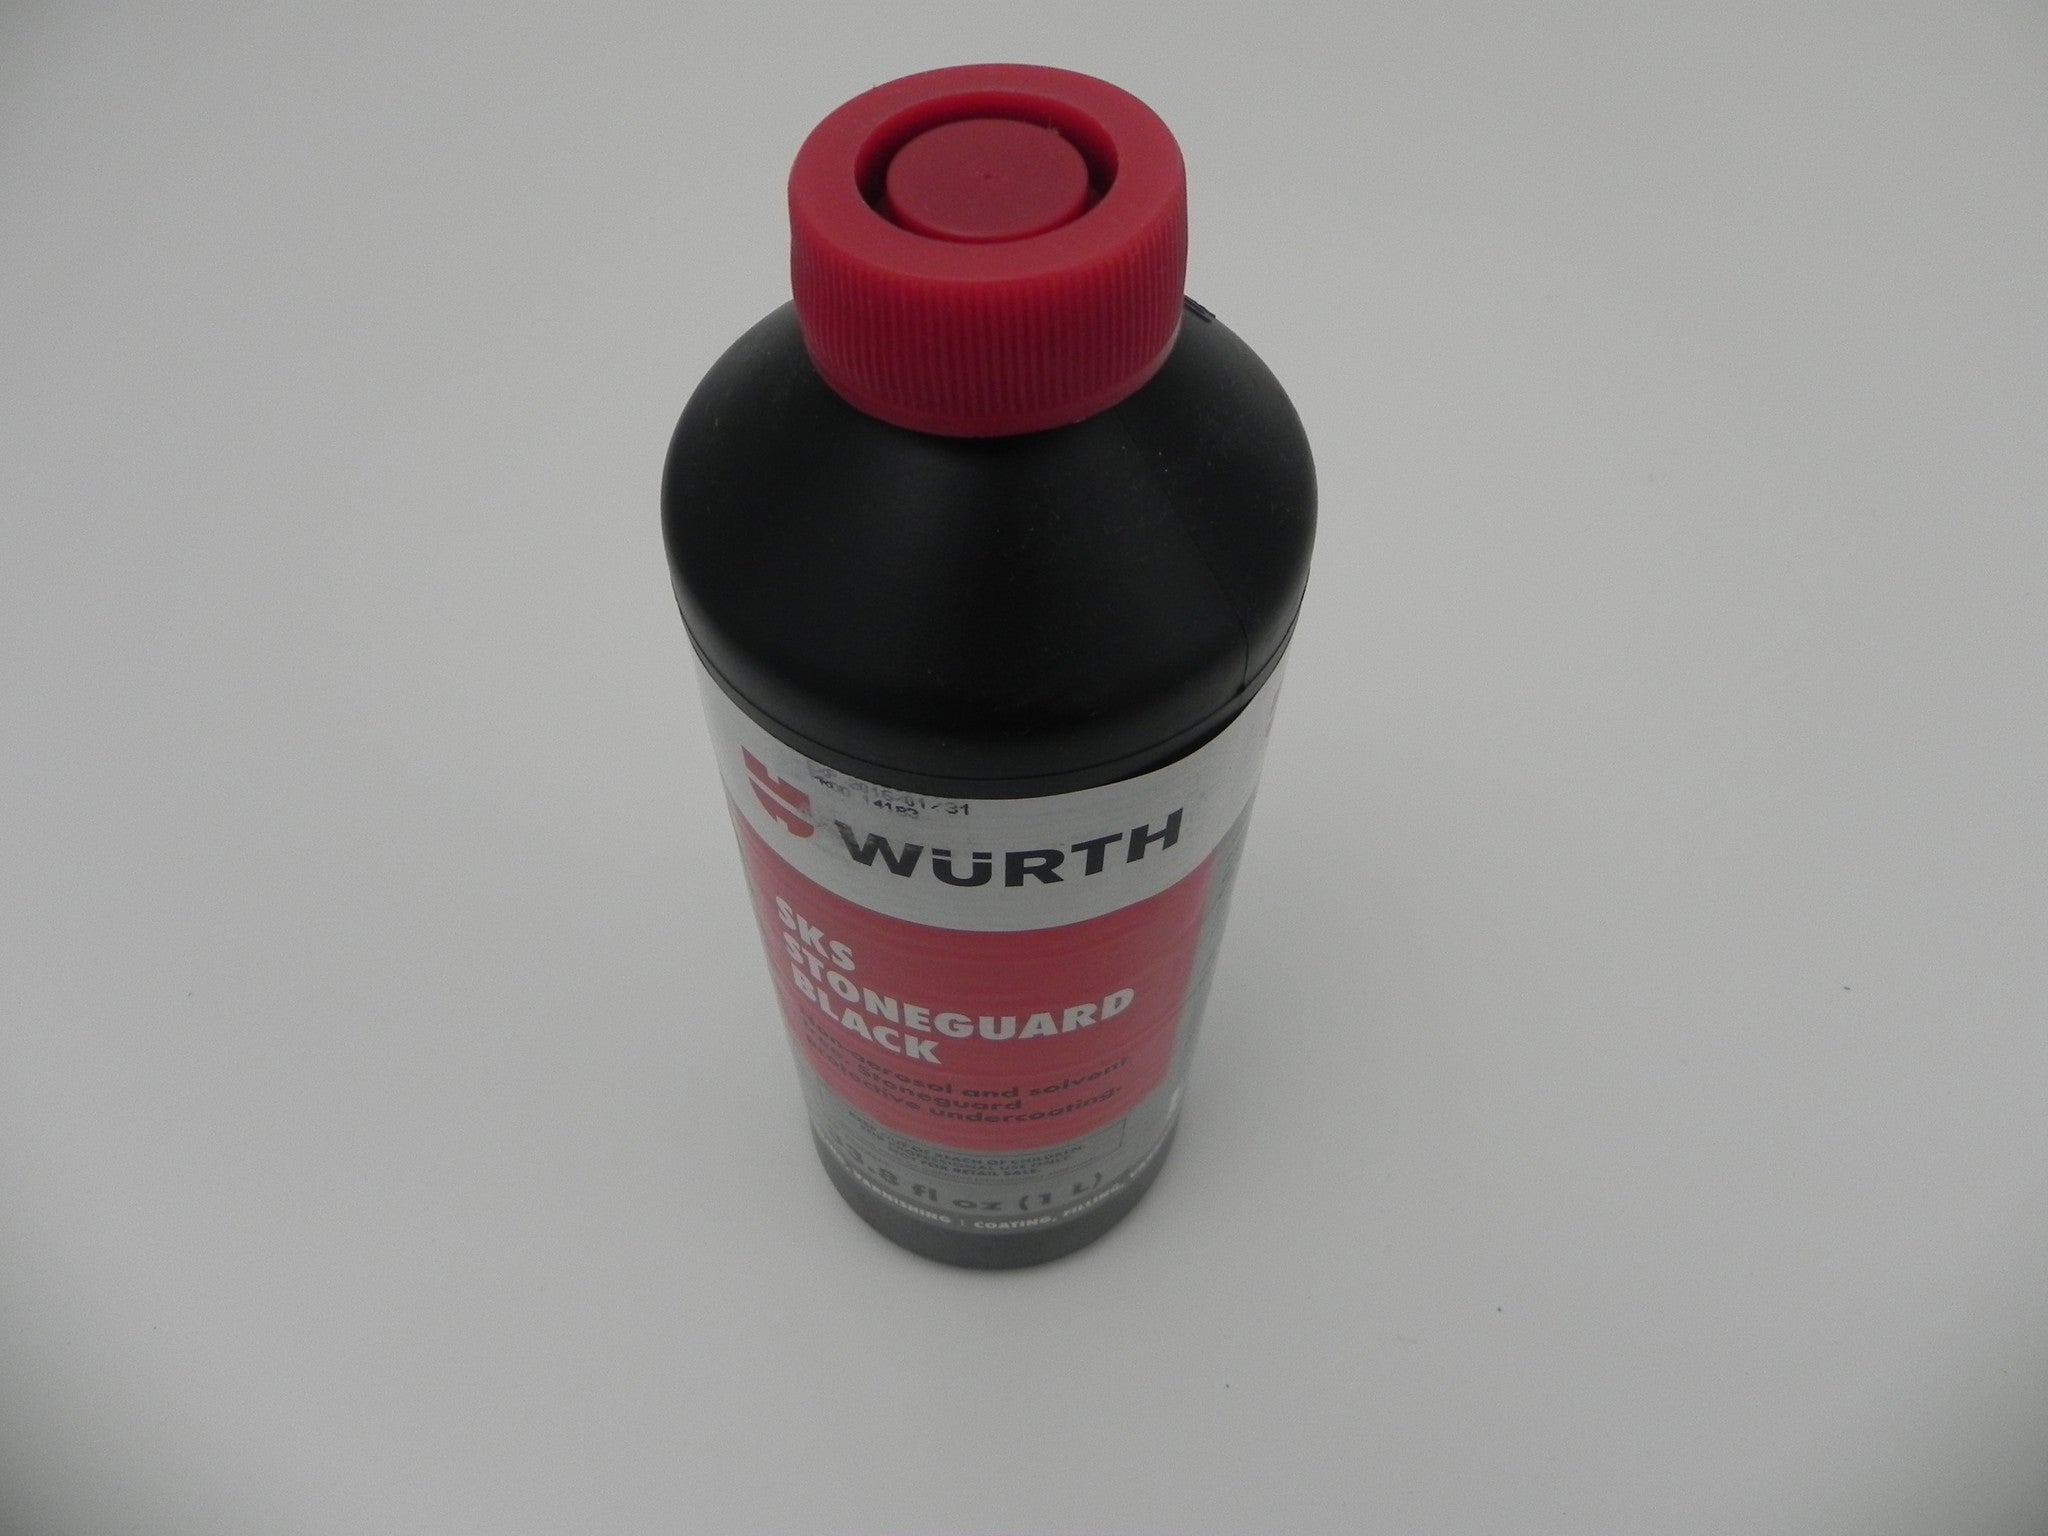 Wurth Spray Undercoating (Aerosol Solvent)